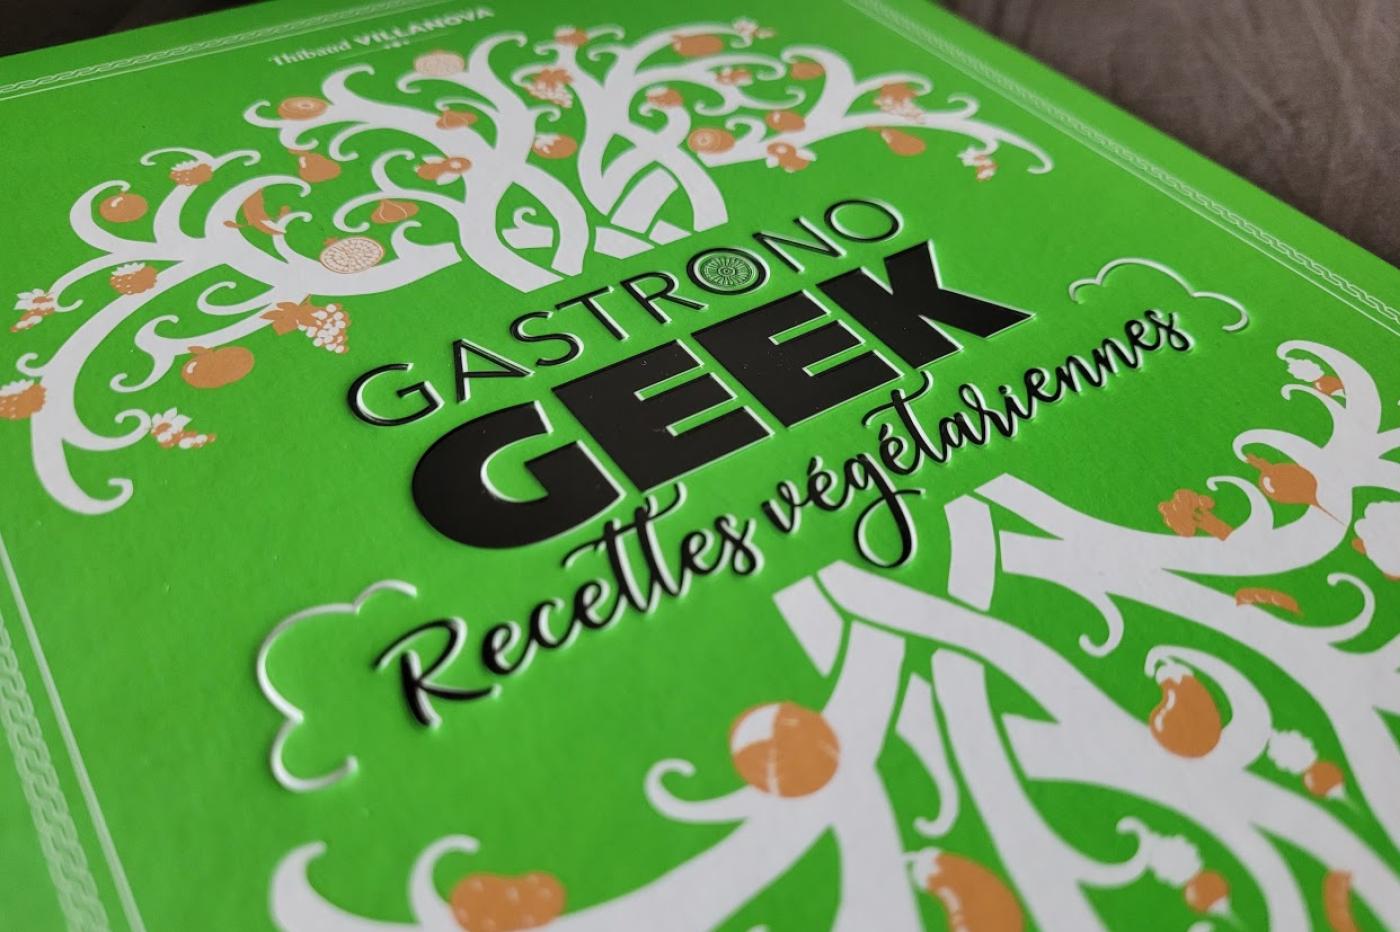 Gastronogeek lance un crowdfunding pour un livre de cuisine Zelda